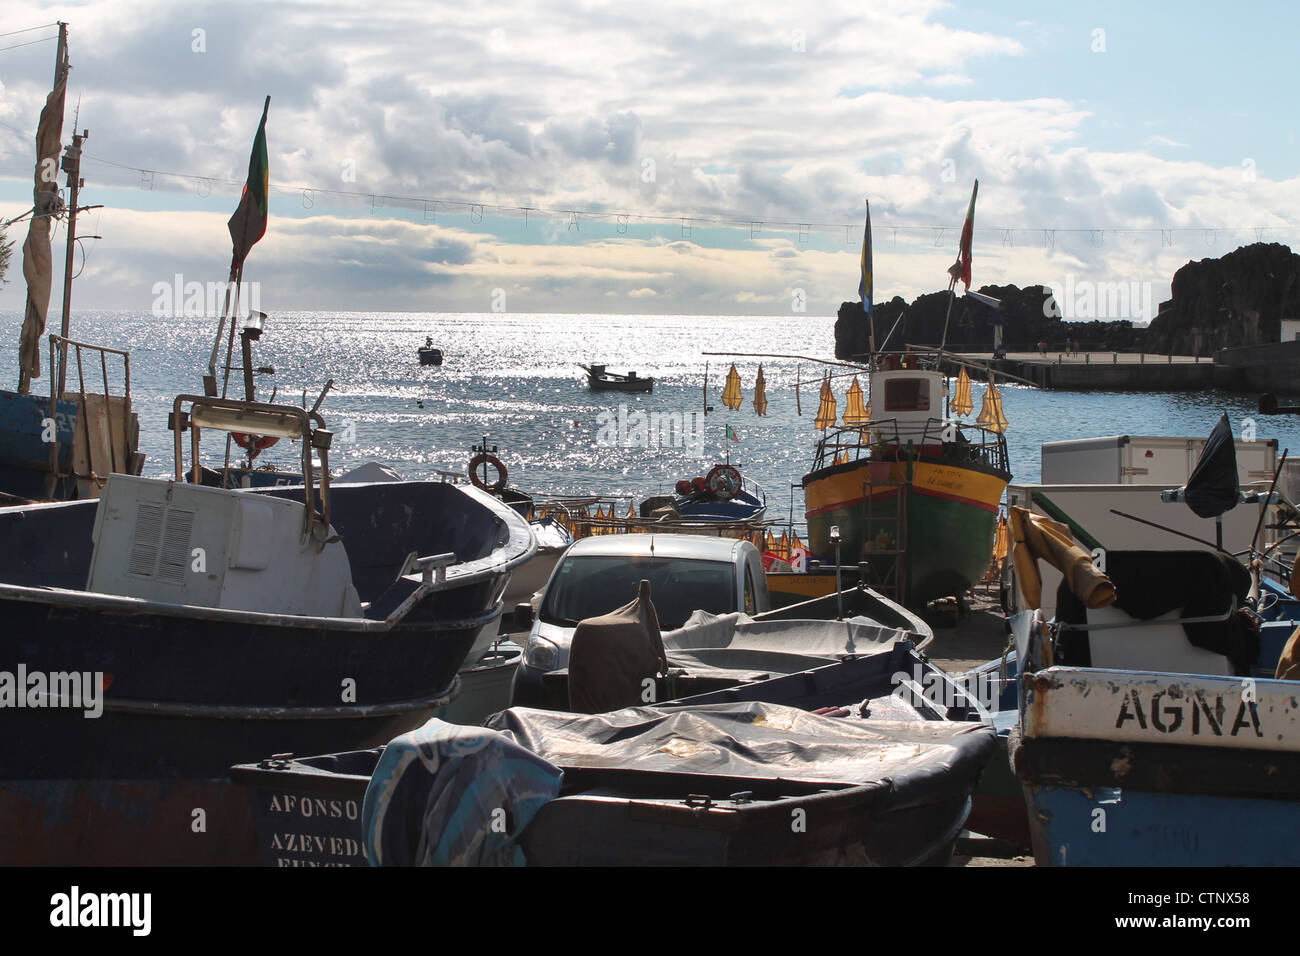 Fishing boats, Winston Churchill Bay, Madeira Stock Photo